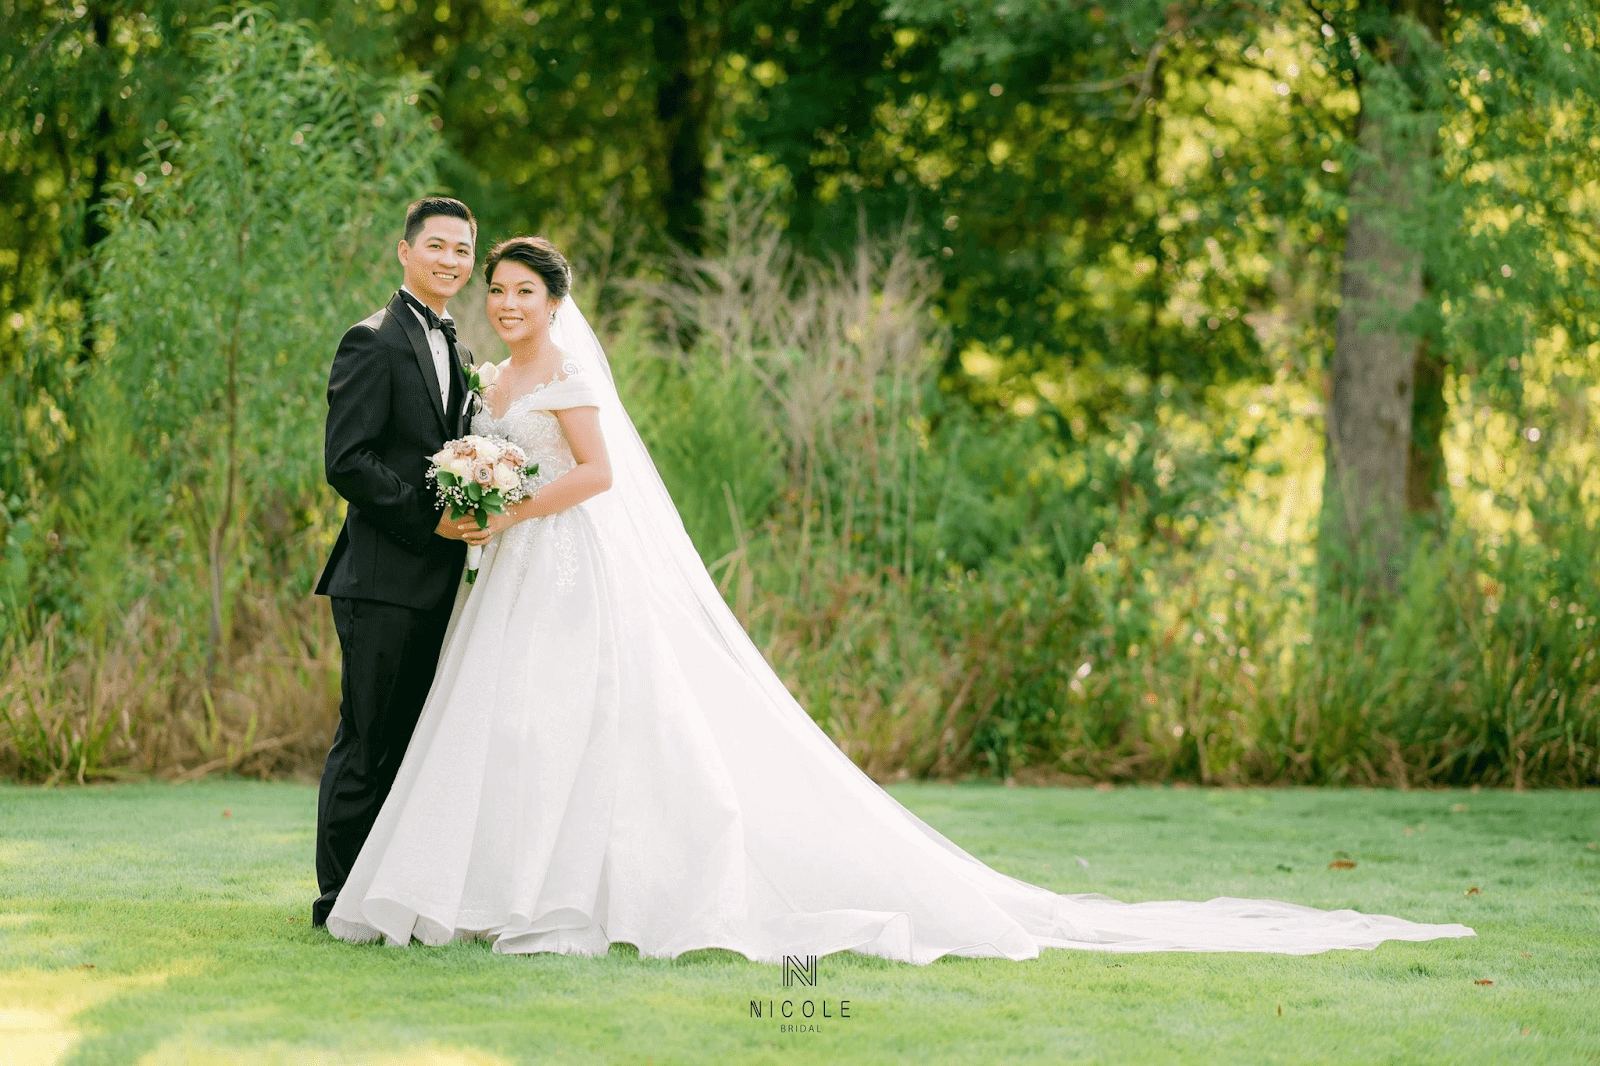 Phong cách chụp ảnh cưới là điều rất quan trọng để ghi lại những khoảnh khắc đáng nhớ trong ngày cưới của mình. Tìm hiểu phong cách và lựa chọn phong cách chụp ảnh cưới phù hợp với mình để có những bức ảnh đẹp nhất.